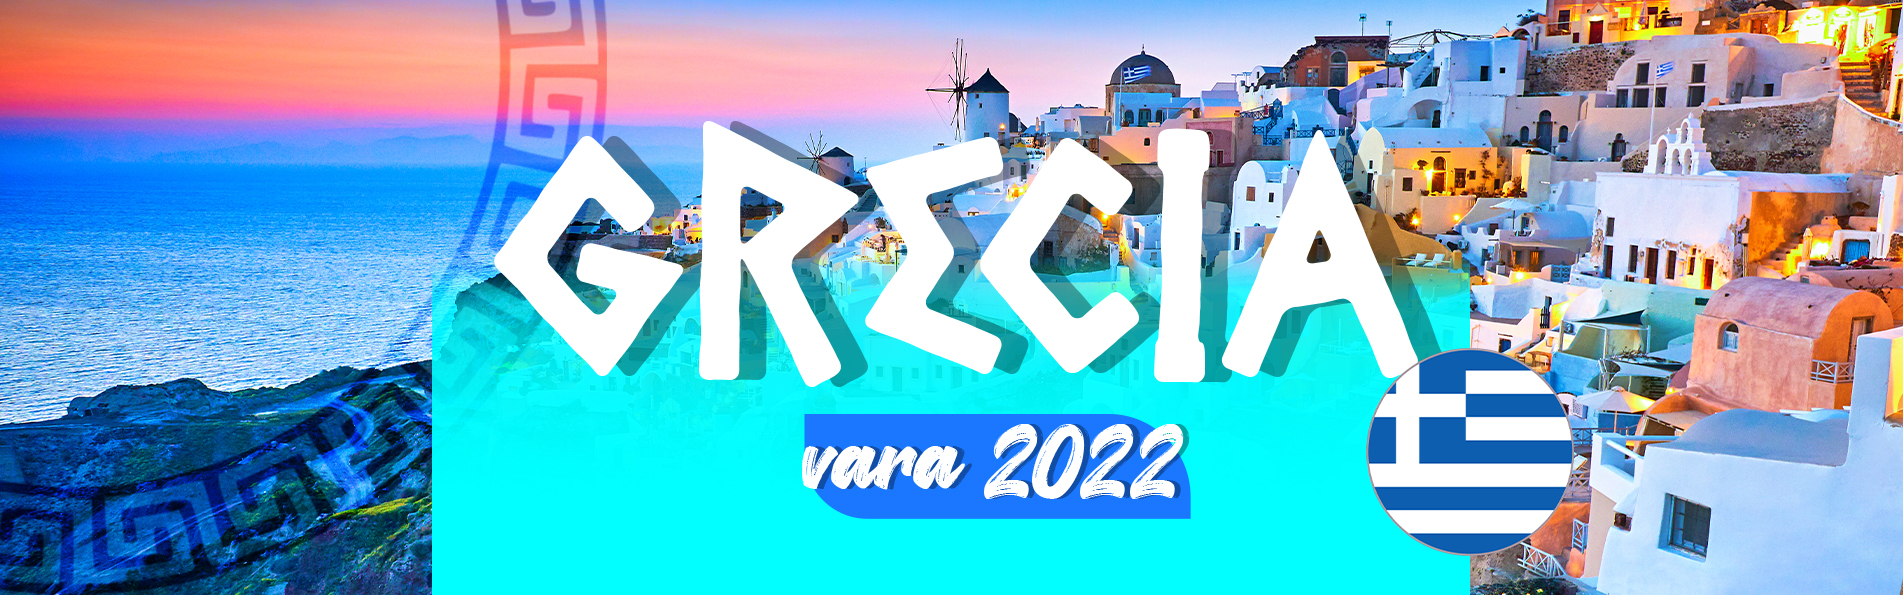 Grecia 2022